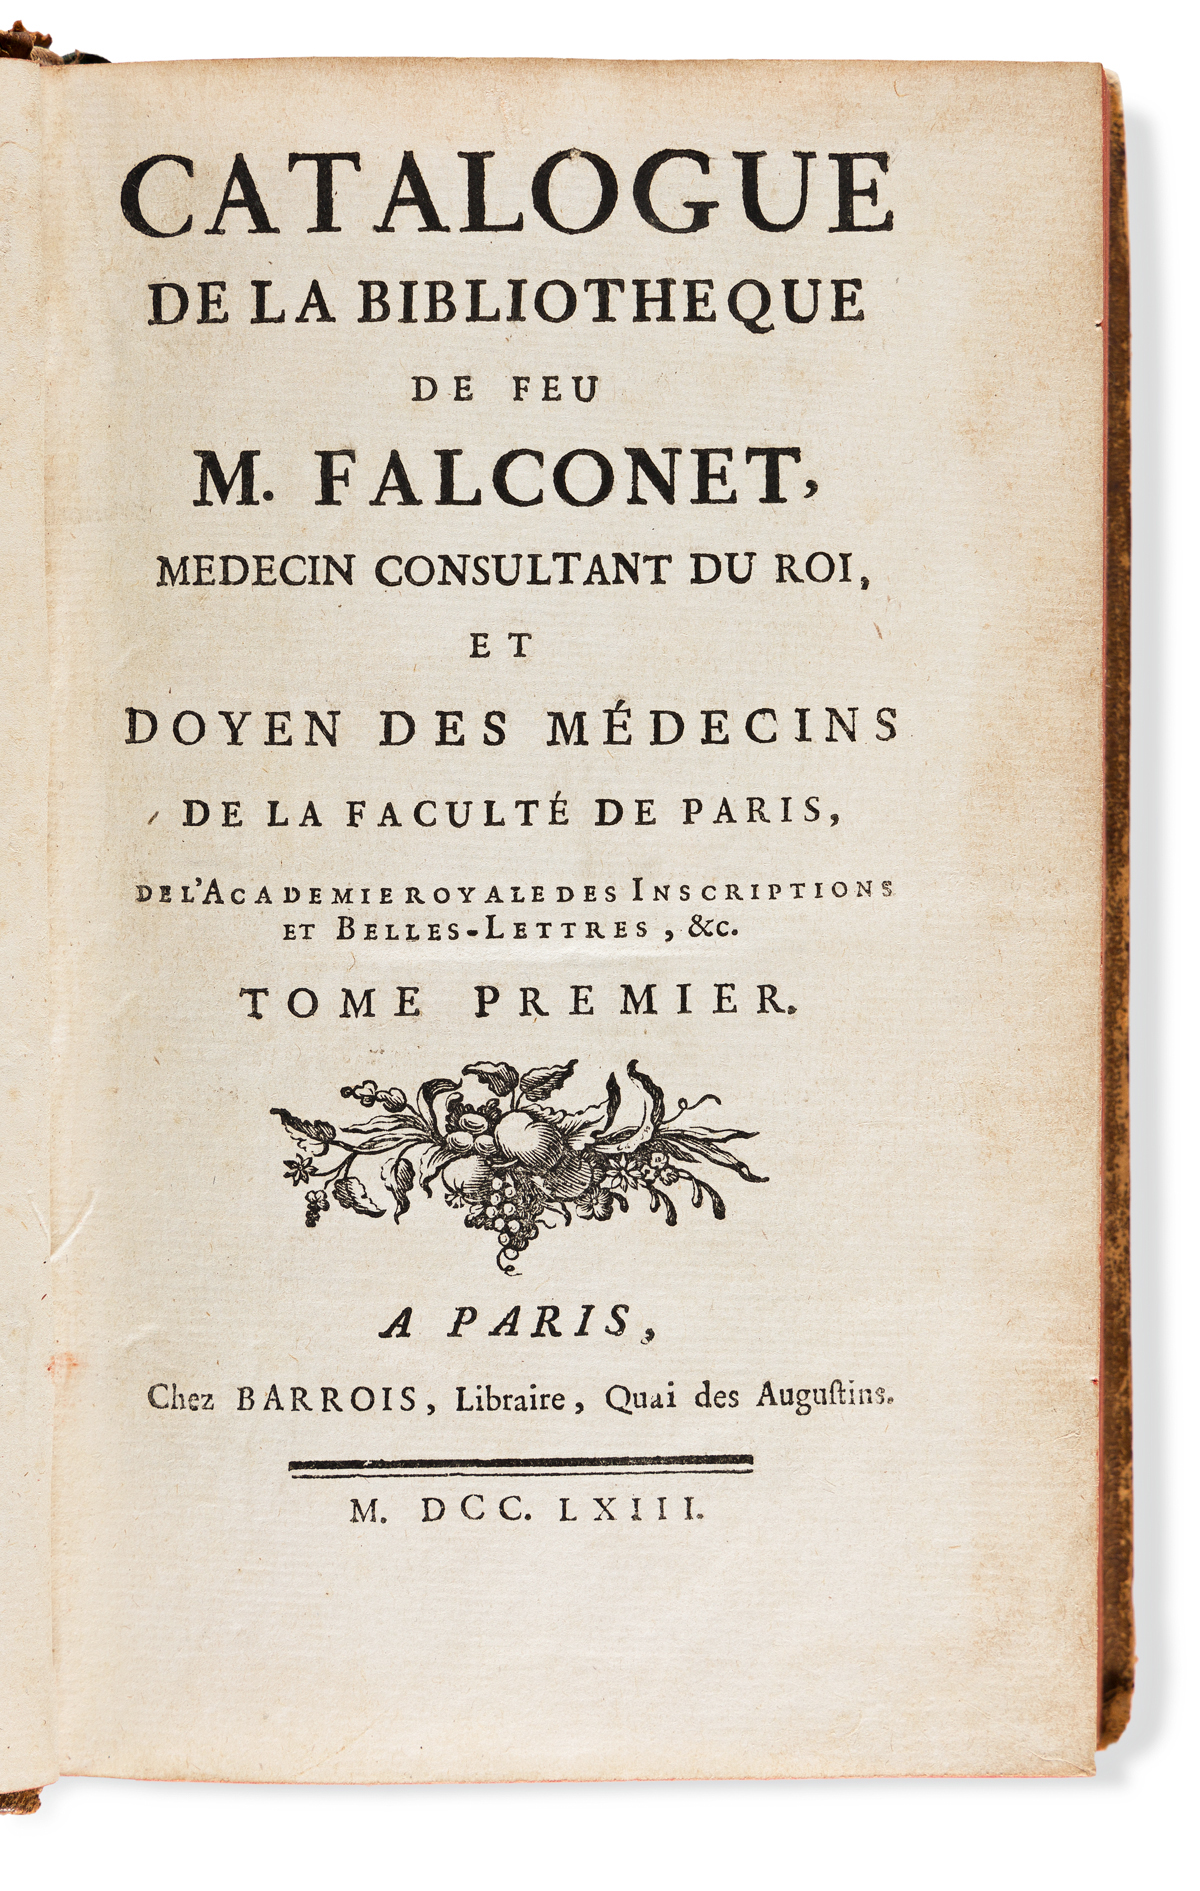 Falconet, Camille (1671-1762) Catalogue de la Bibliothèque de feu M. [Camille] Falconet, Medecin Consultant du Roi, et Doyen des Médeci